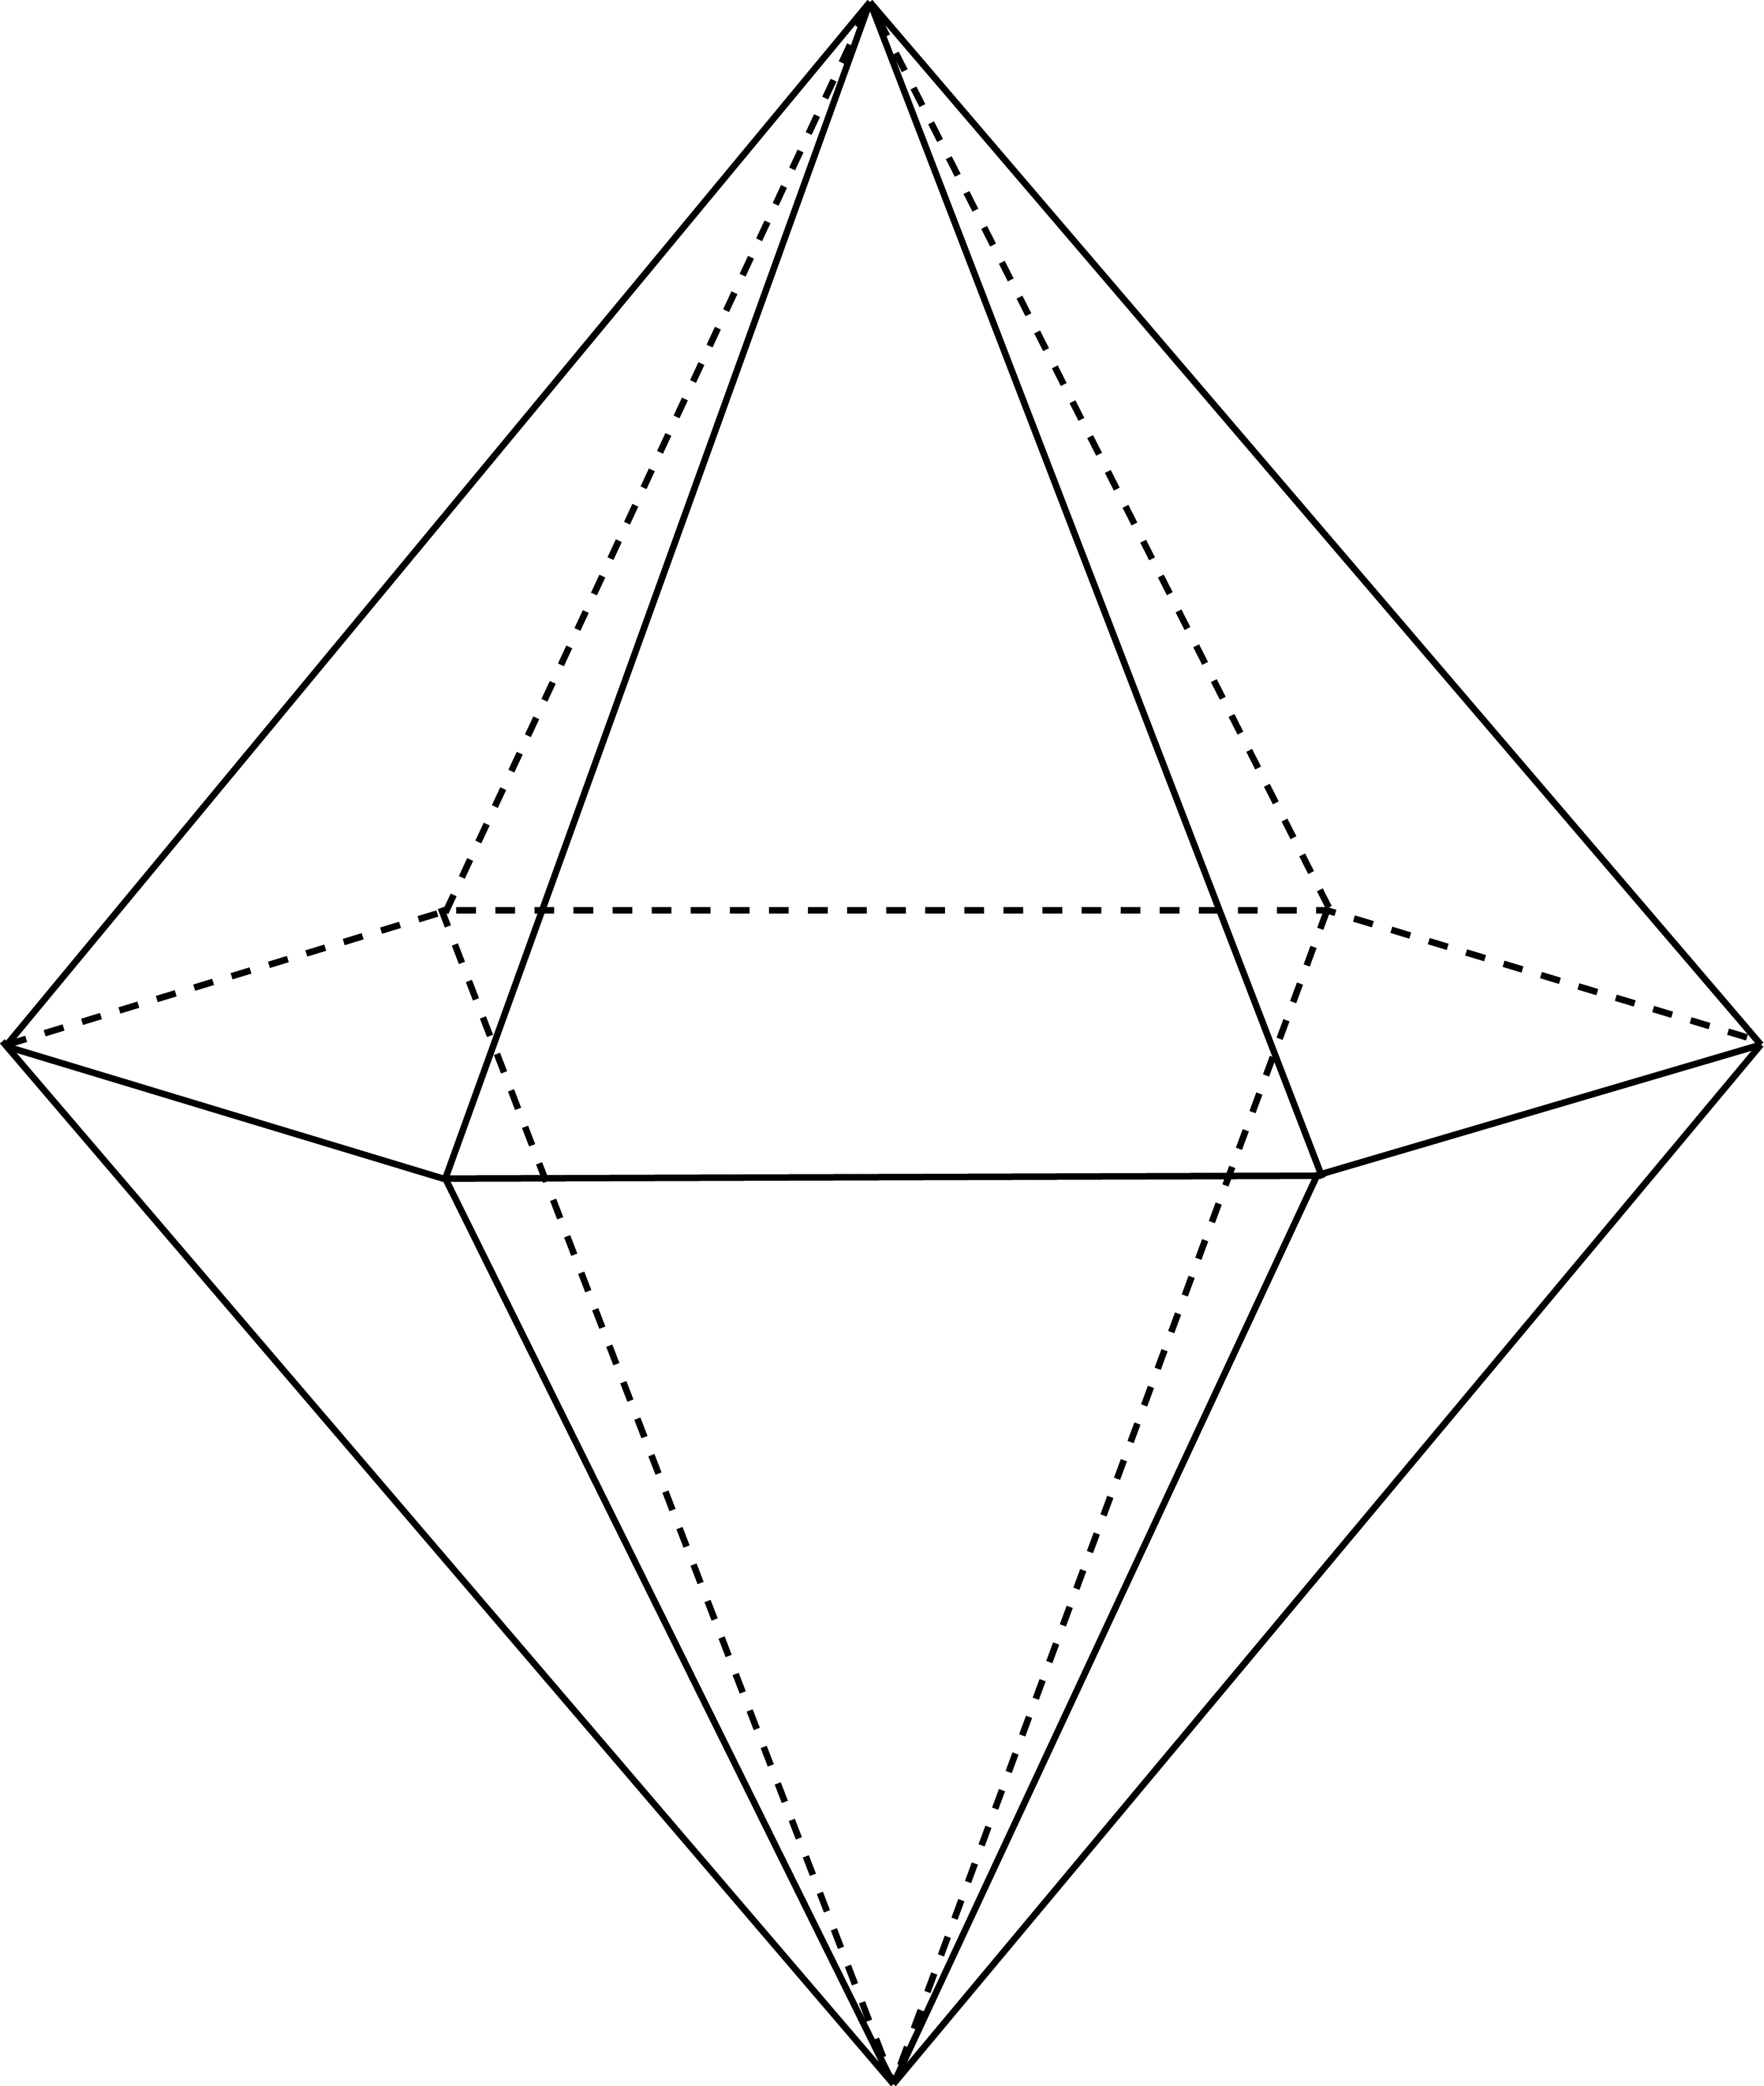 Призма октаэдр. Многогранник октаэдр. Гексагональная дипирадмида. Тетрагональная бипирамида. Шестиугольная бипирамида.